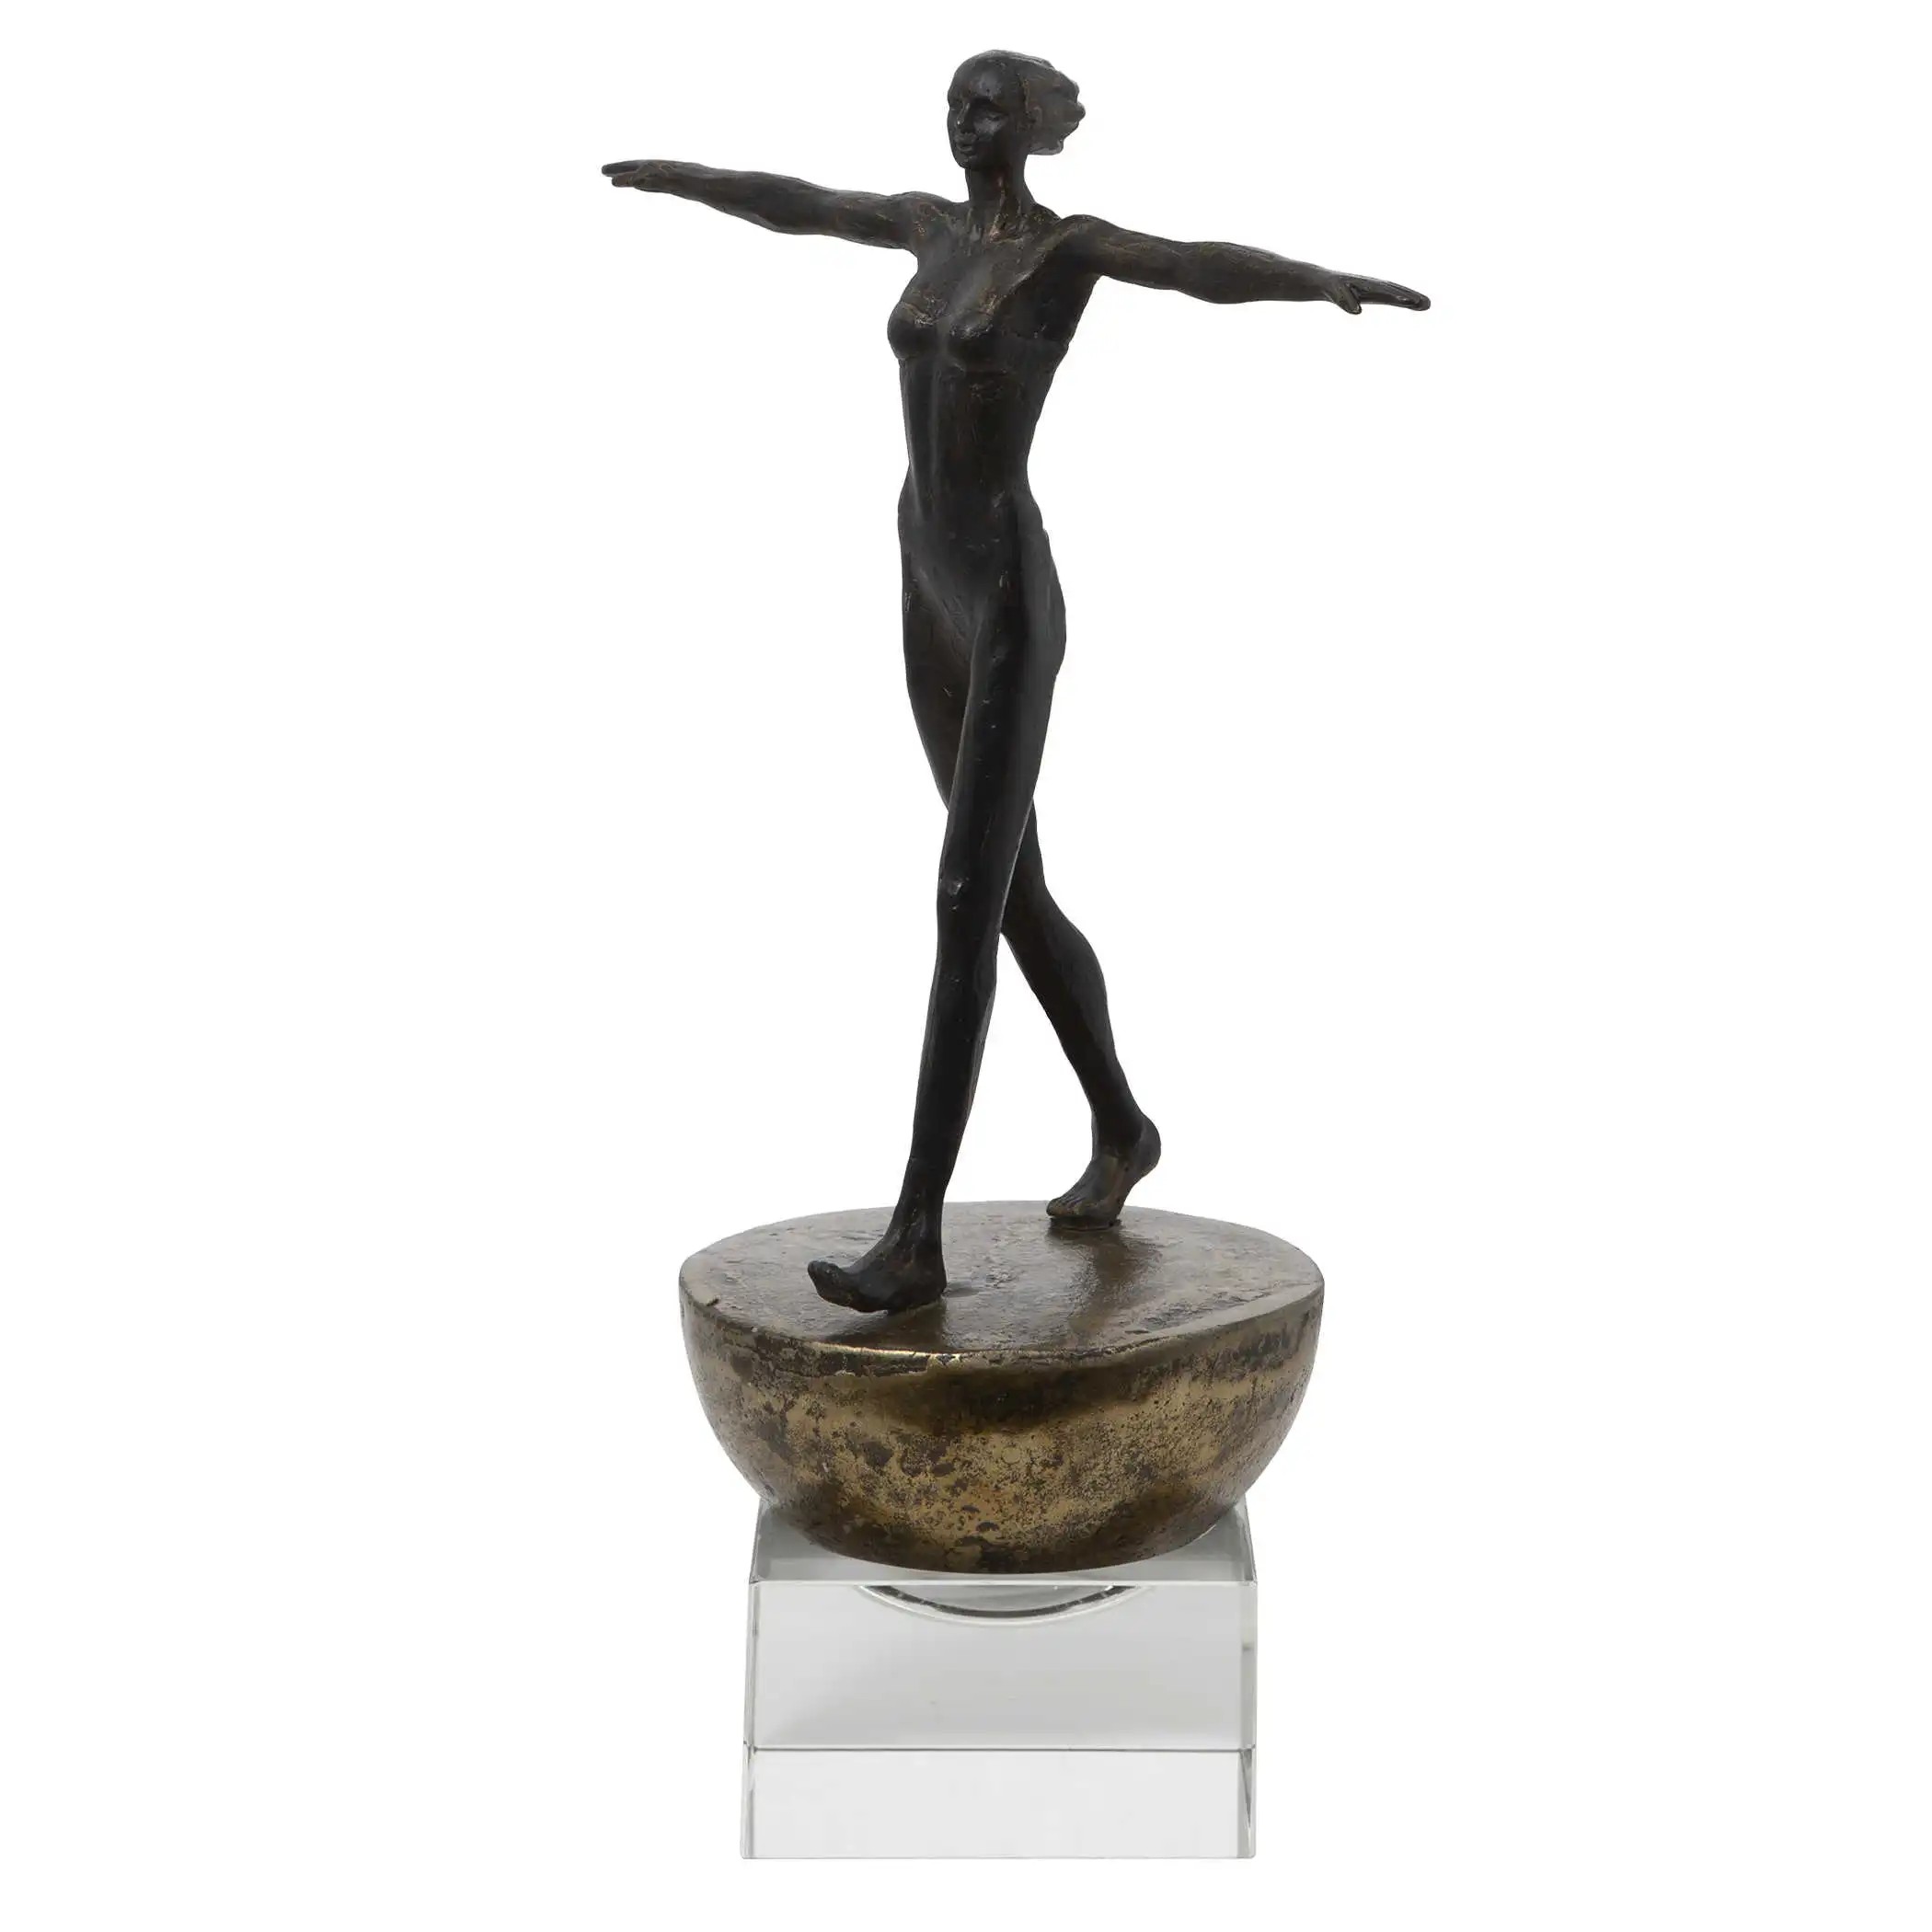 Finding Balance Sculpture - Woman